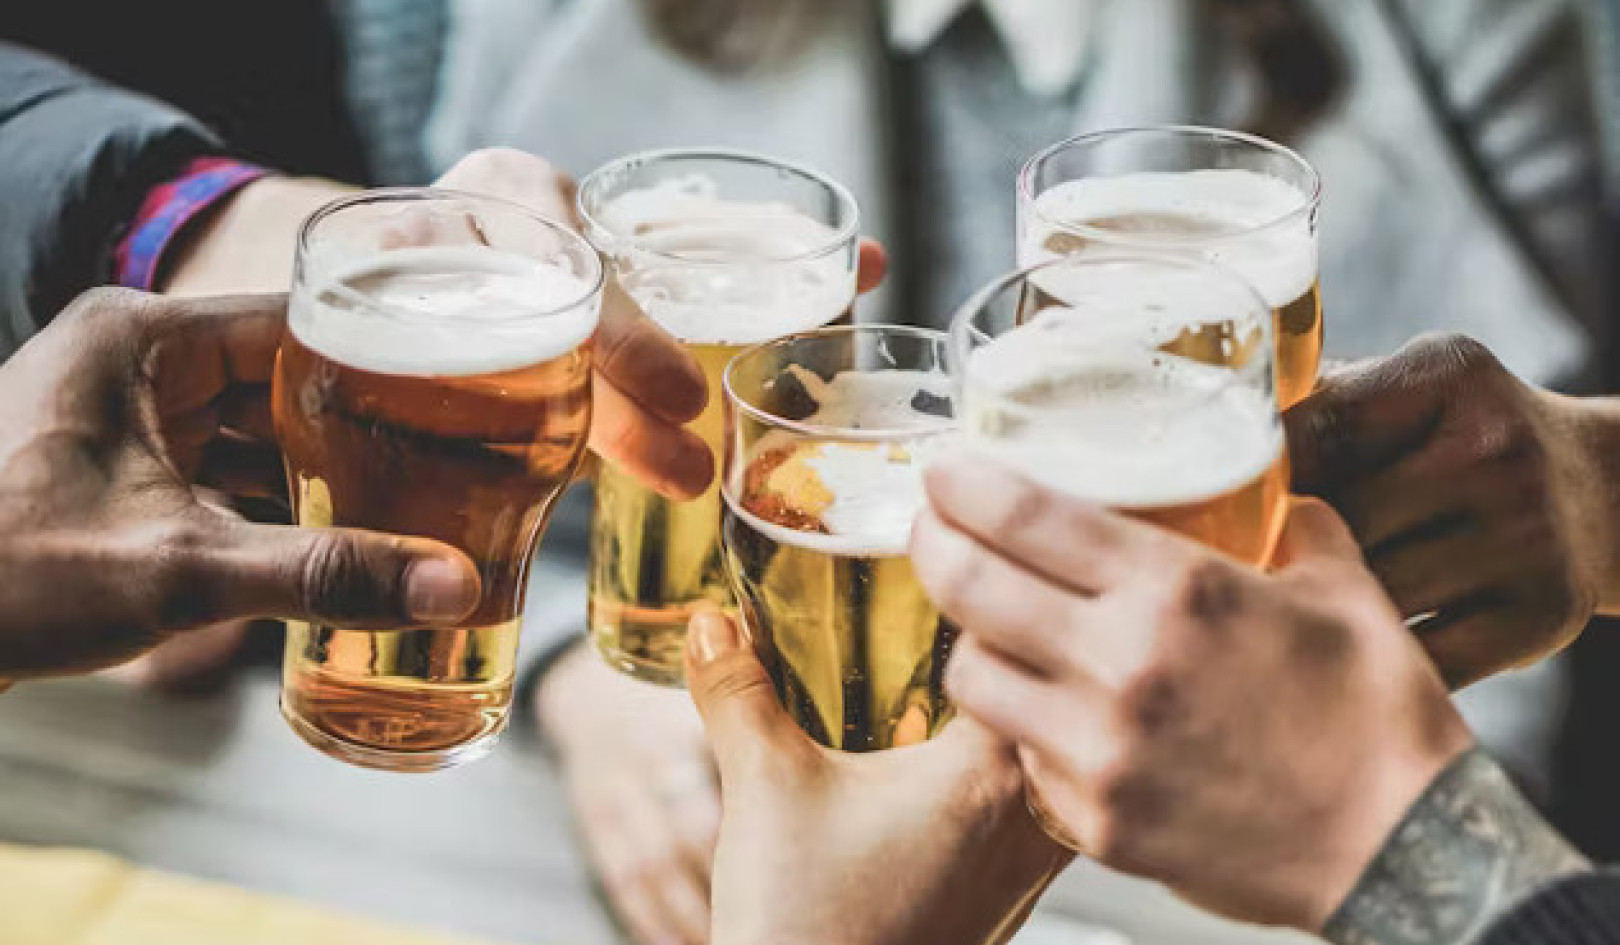 Ist mäßiger Alkoholkonsum wirklich gesund? Die Fakten aufdecken